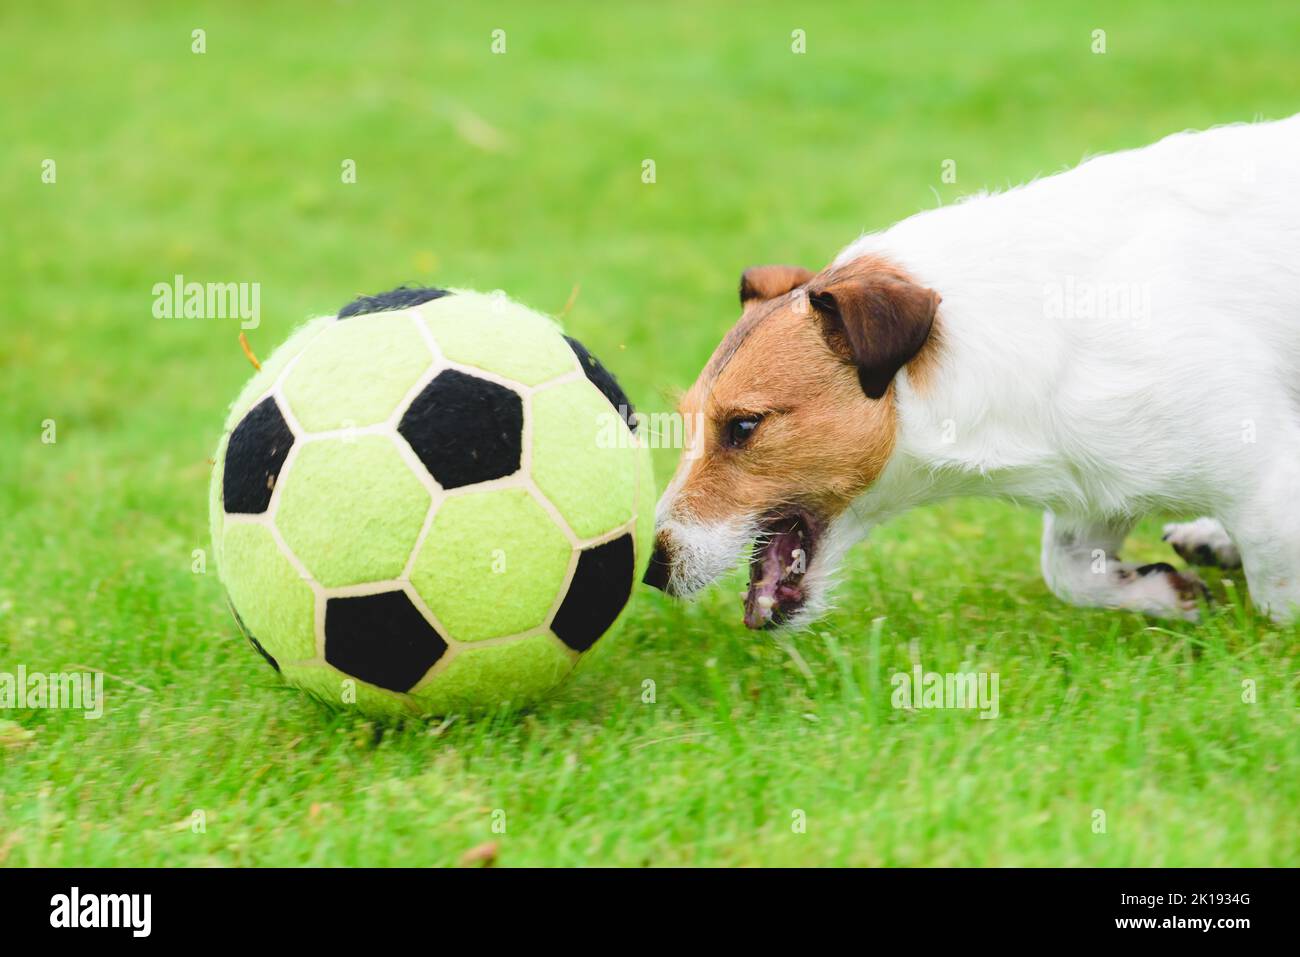 Dog dimostra eccellenti abilità di dribbling inseguendo palla di calcio (calcio) ad alta velocità Foto Stock